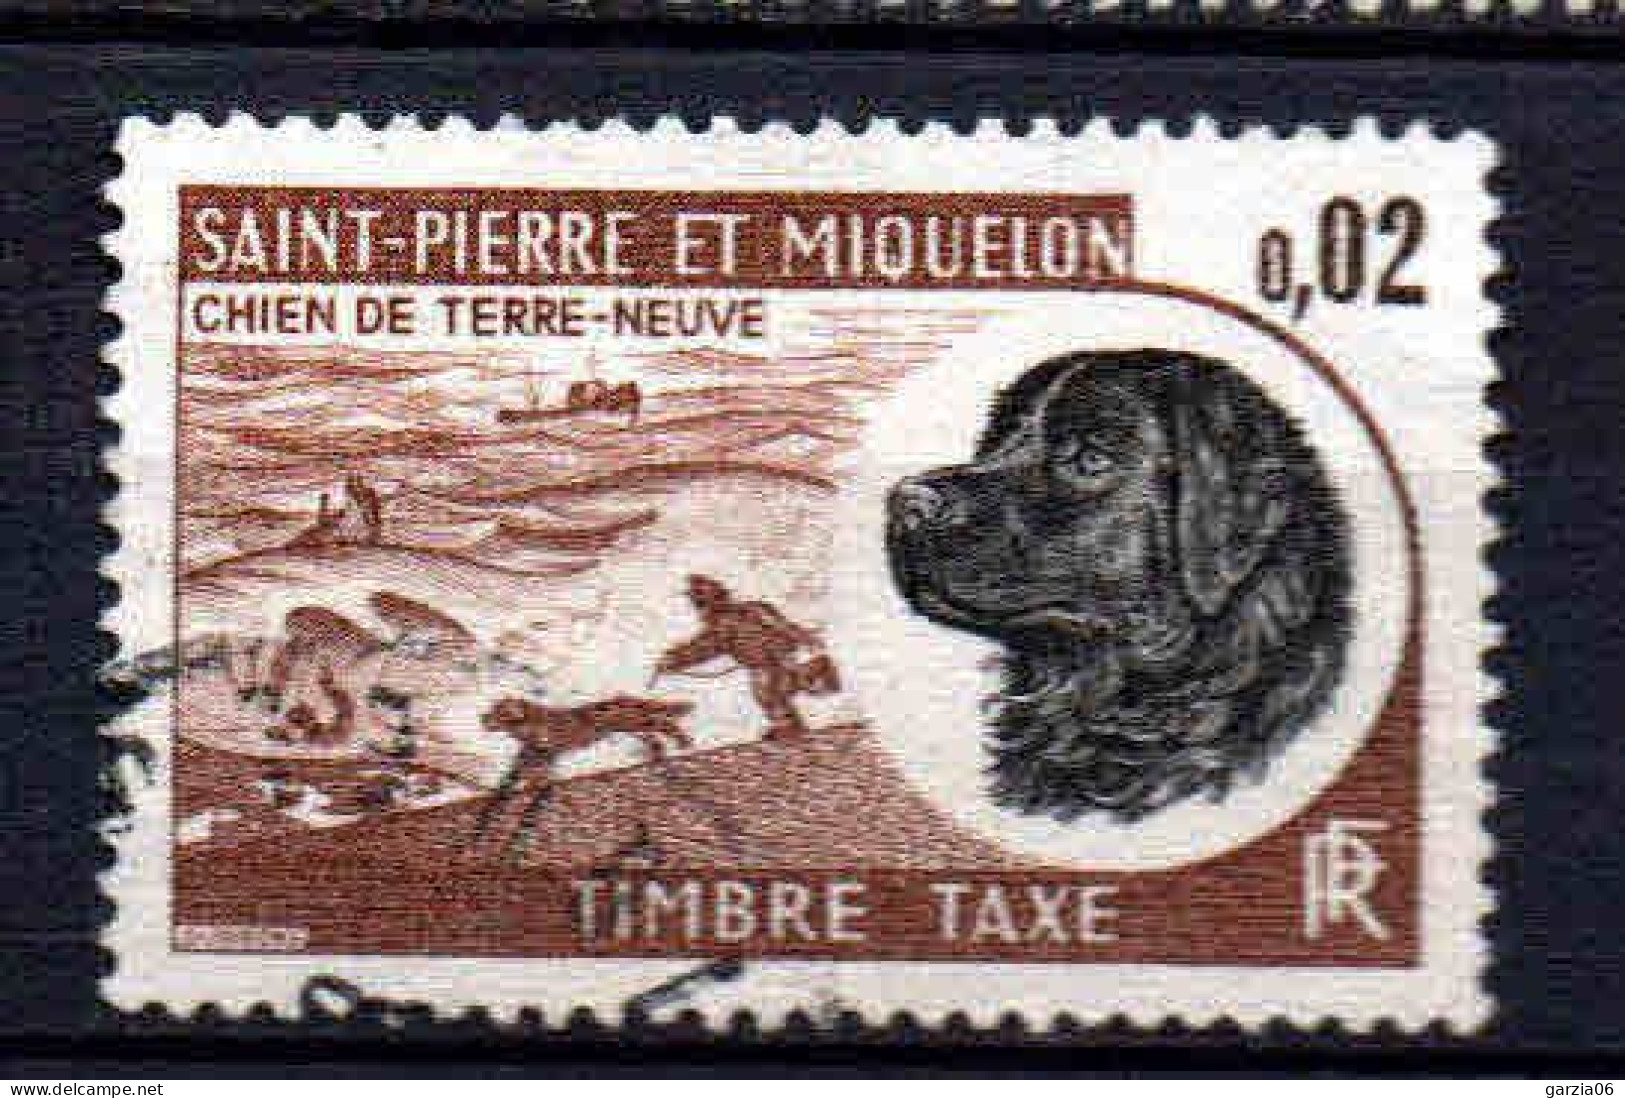 St Pierre Et Miquelon    - 1973 -  Chien De Terre Neuve - Tb Taxe  -  N° 77  - Oblit - Used - Timbres-taxe